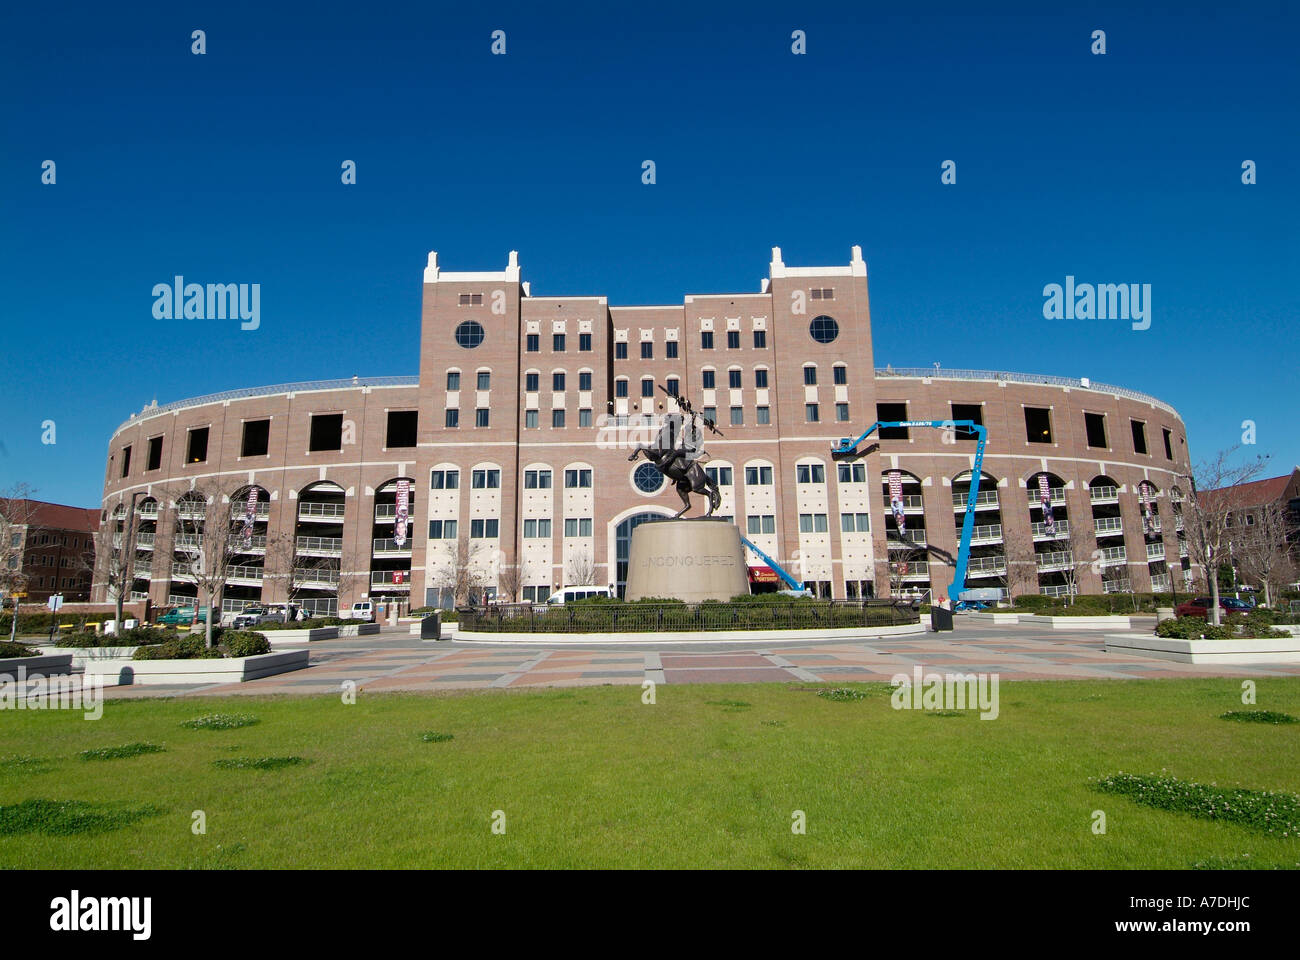 S Doak Campbell Football Stadium et centre d'information sur le campus de l'Université d'État de Floride Floride Tallahassee FL Seminoles Banque D'Images